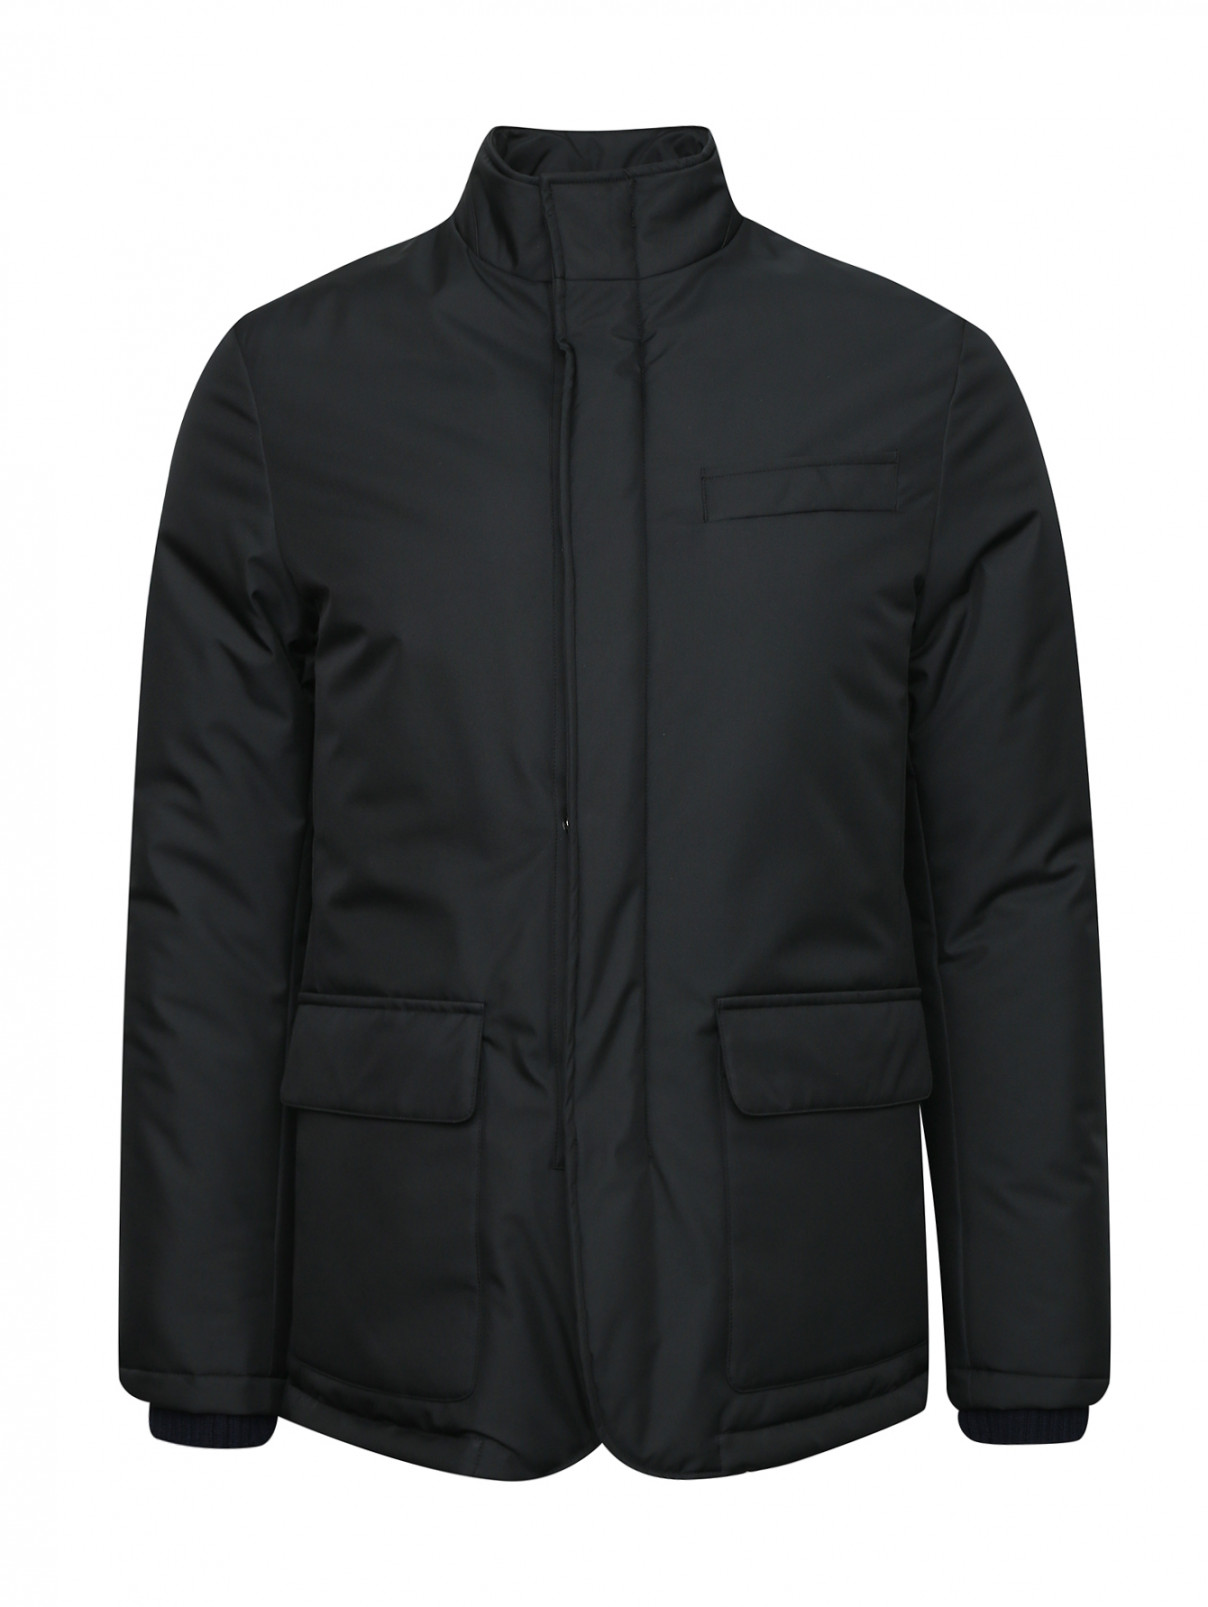 Куртка с накладными карманами Pal Zileri  –  Общий вид  – Цвет:  Черный